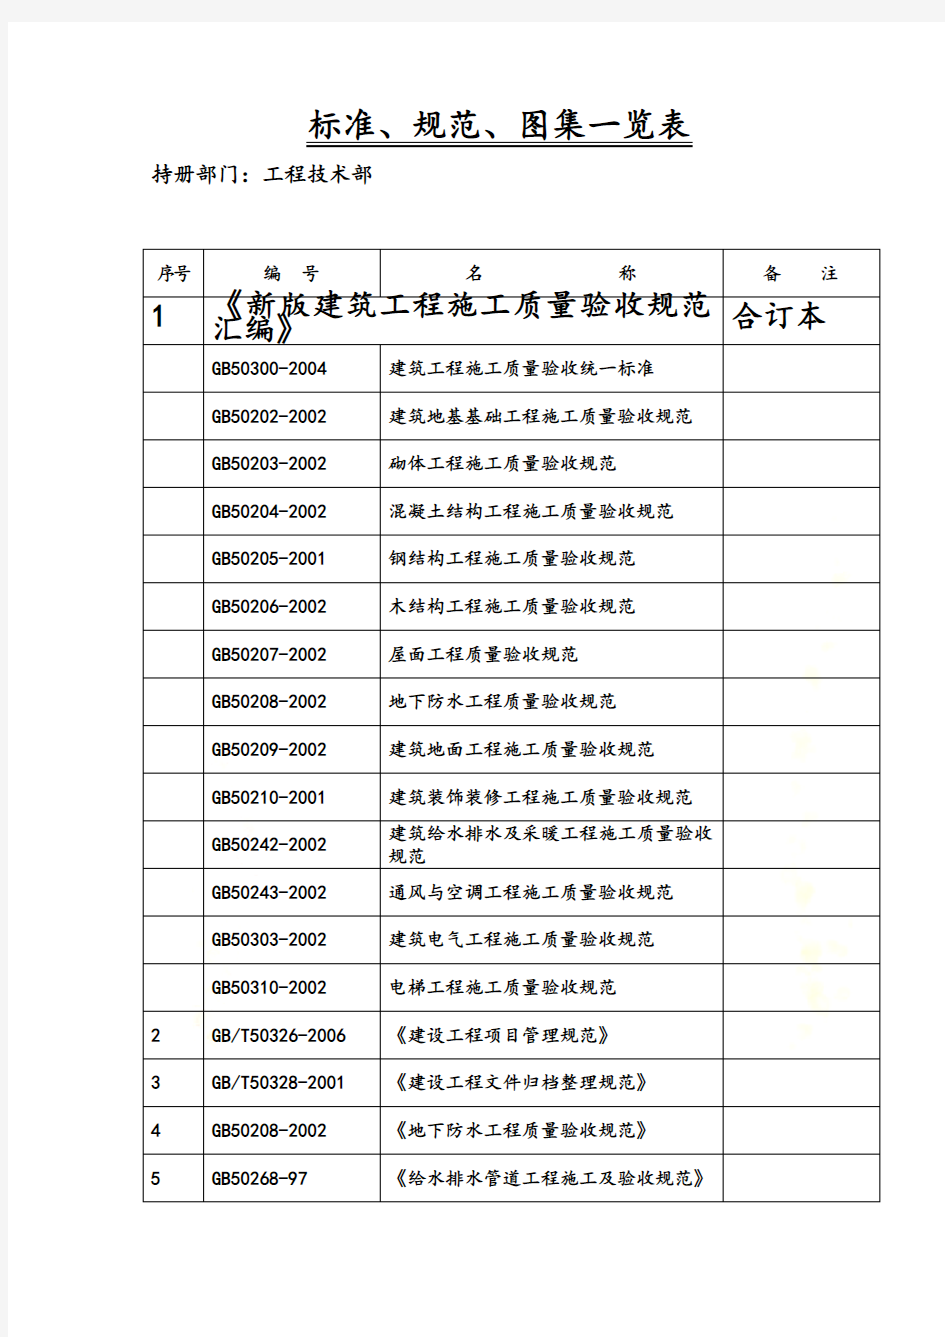 标准、规范、图集一览表(中国建筑)